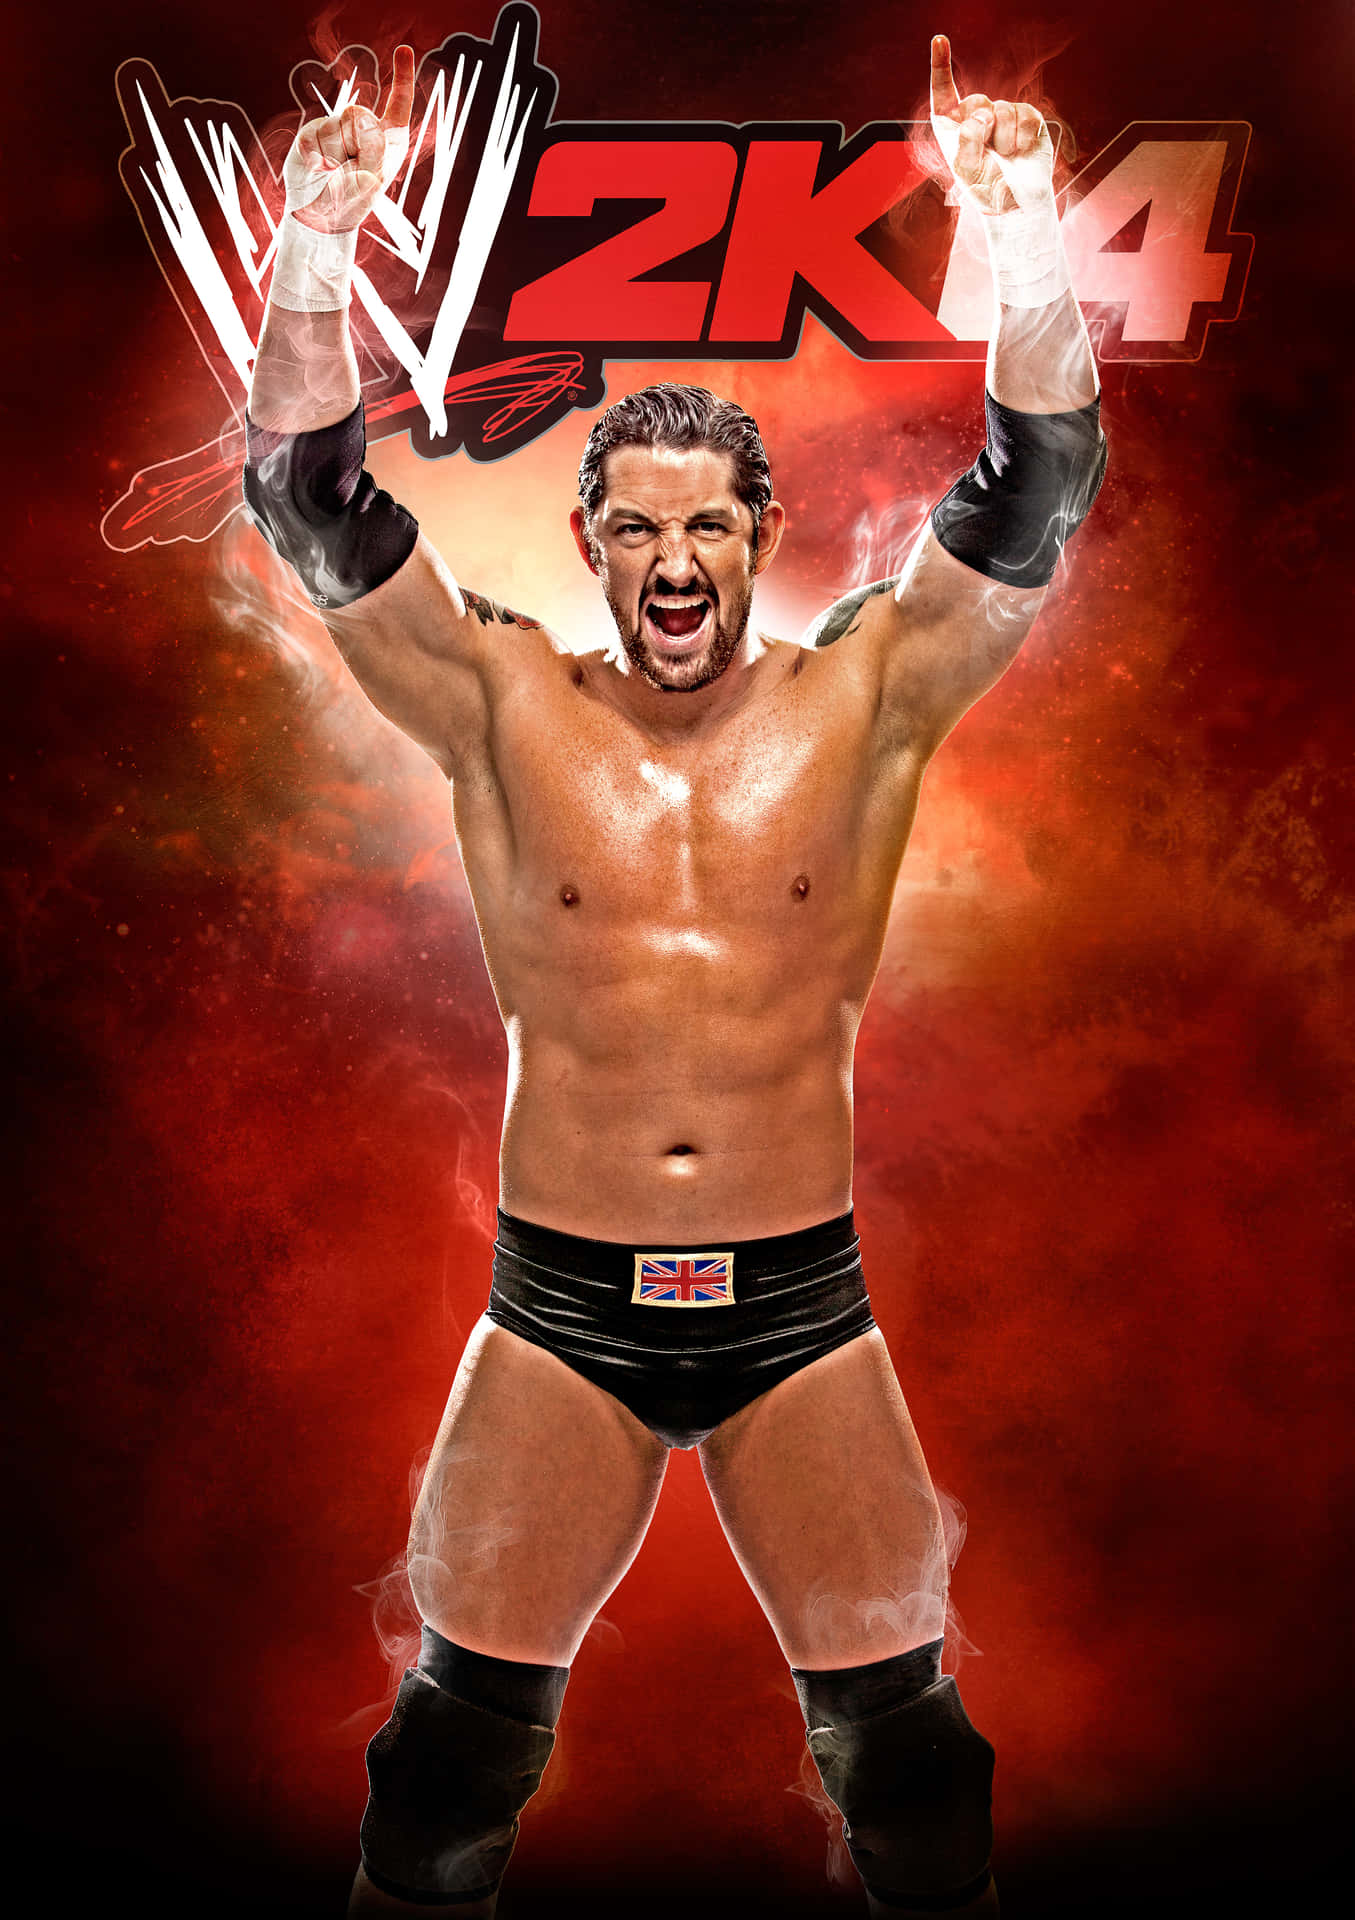 Wade Barrett in Action - WWE 2K14 Wallpaper